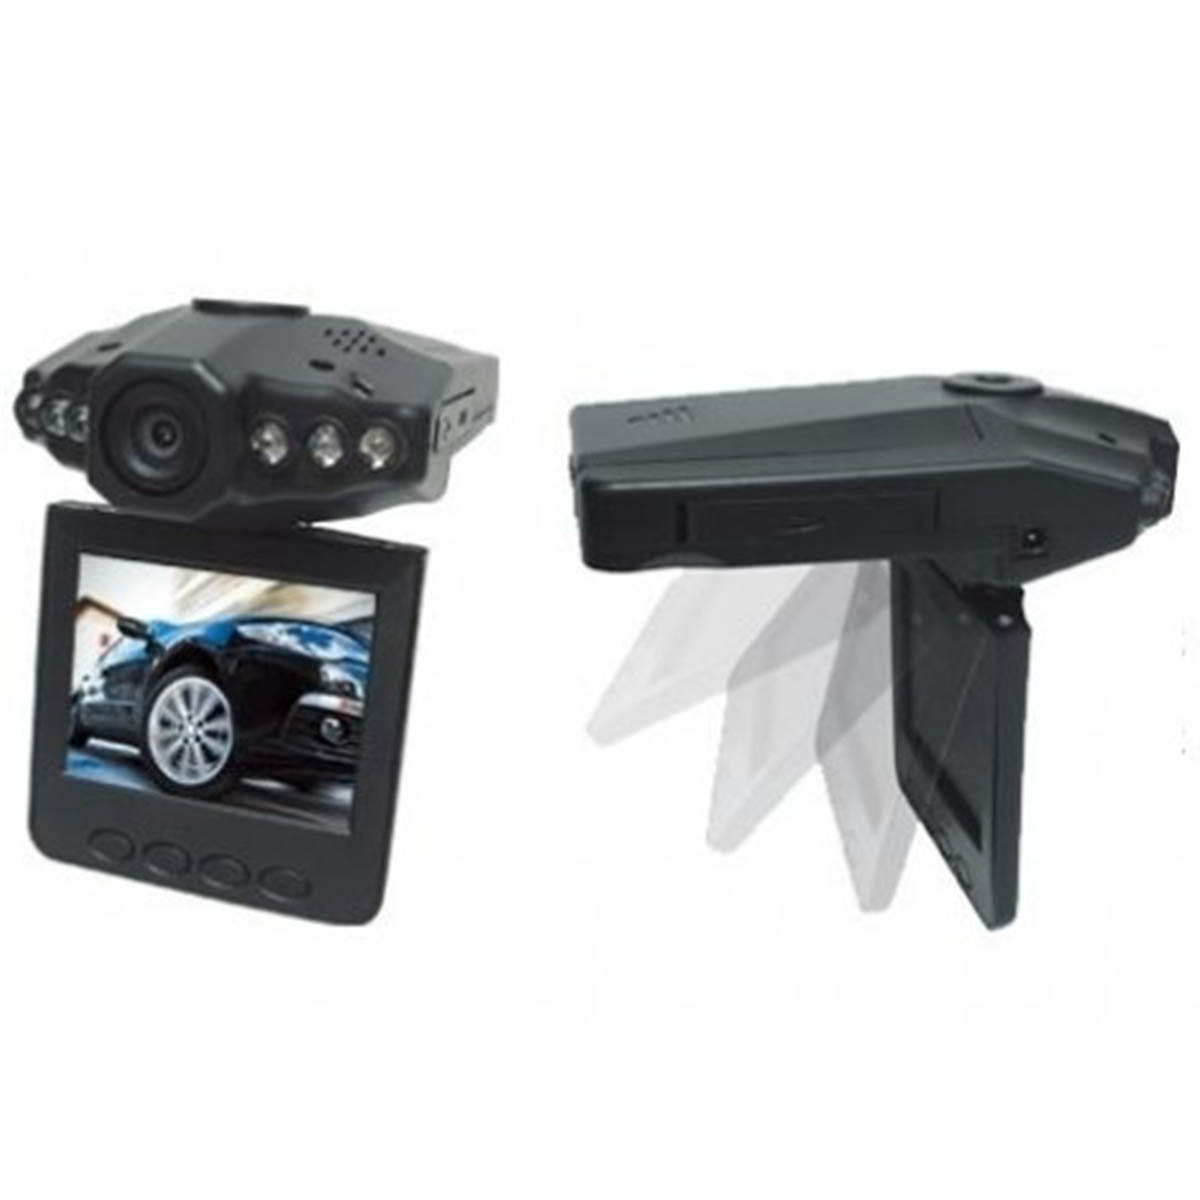 Автомобильный видеорегистратор HD DVR 128, цвет черный